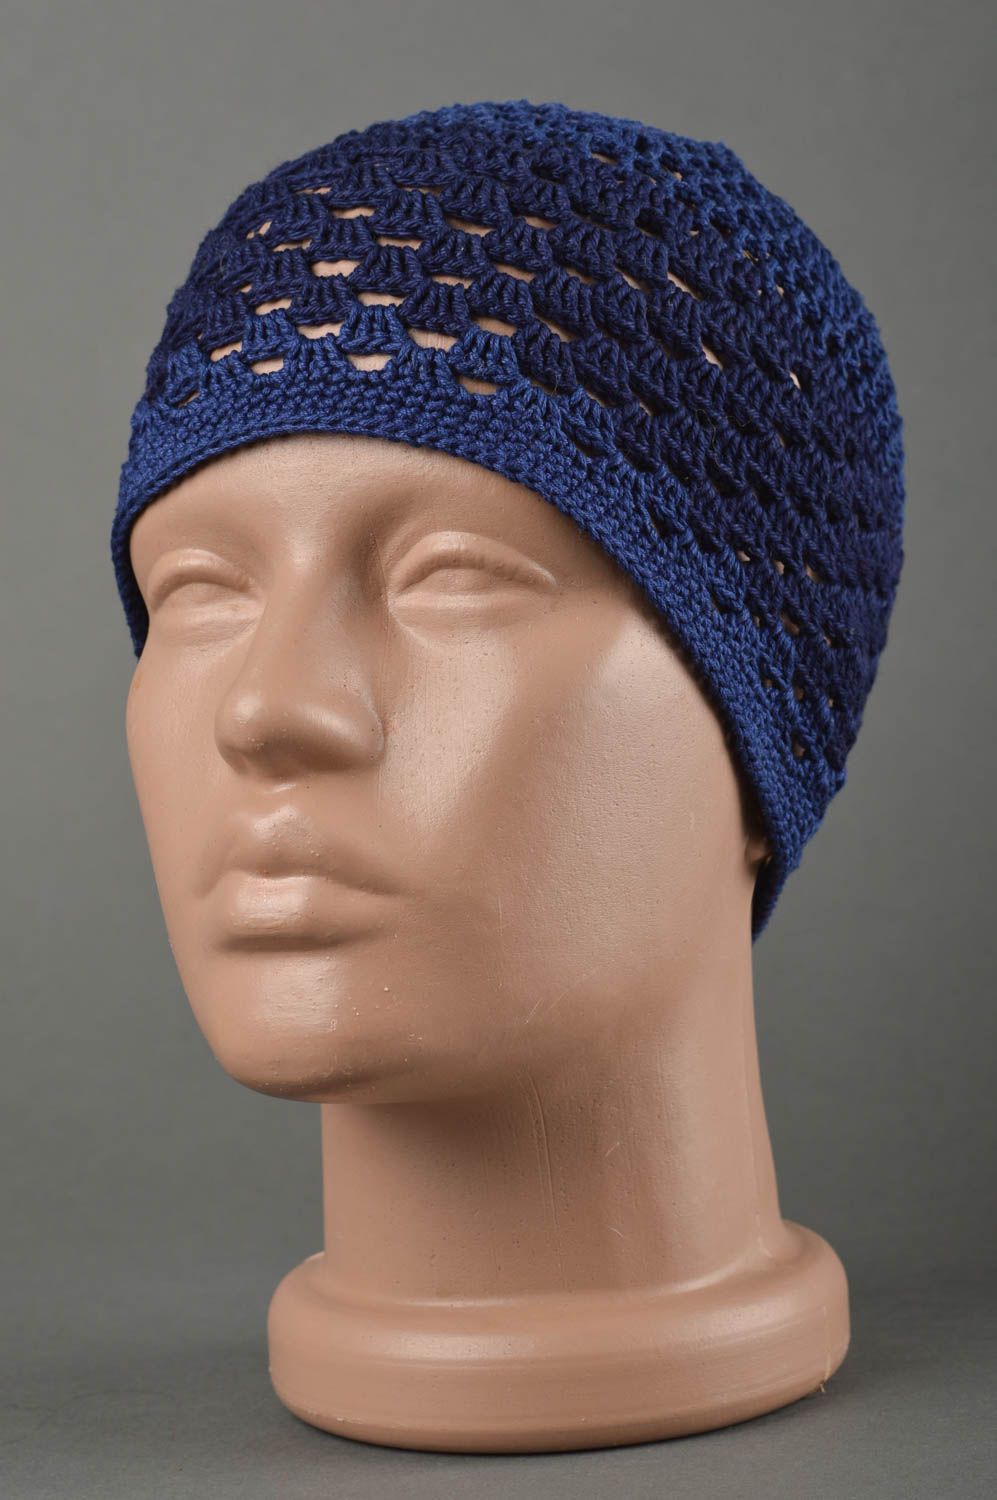 Вязаная шапка для детей хэндмэйд шапочка на девочку весенняя шапка синяя фото 1